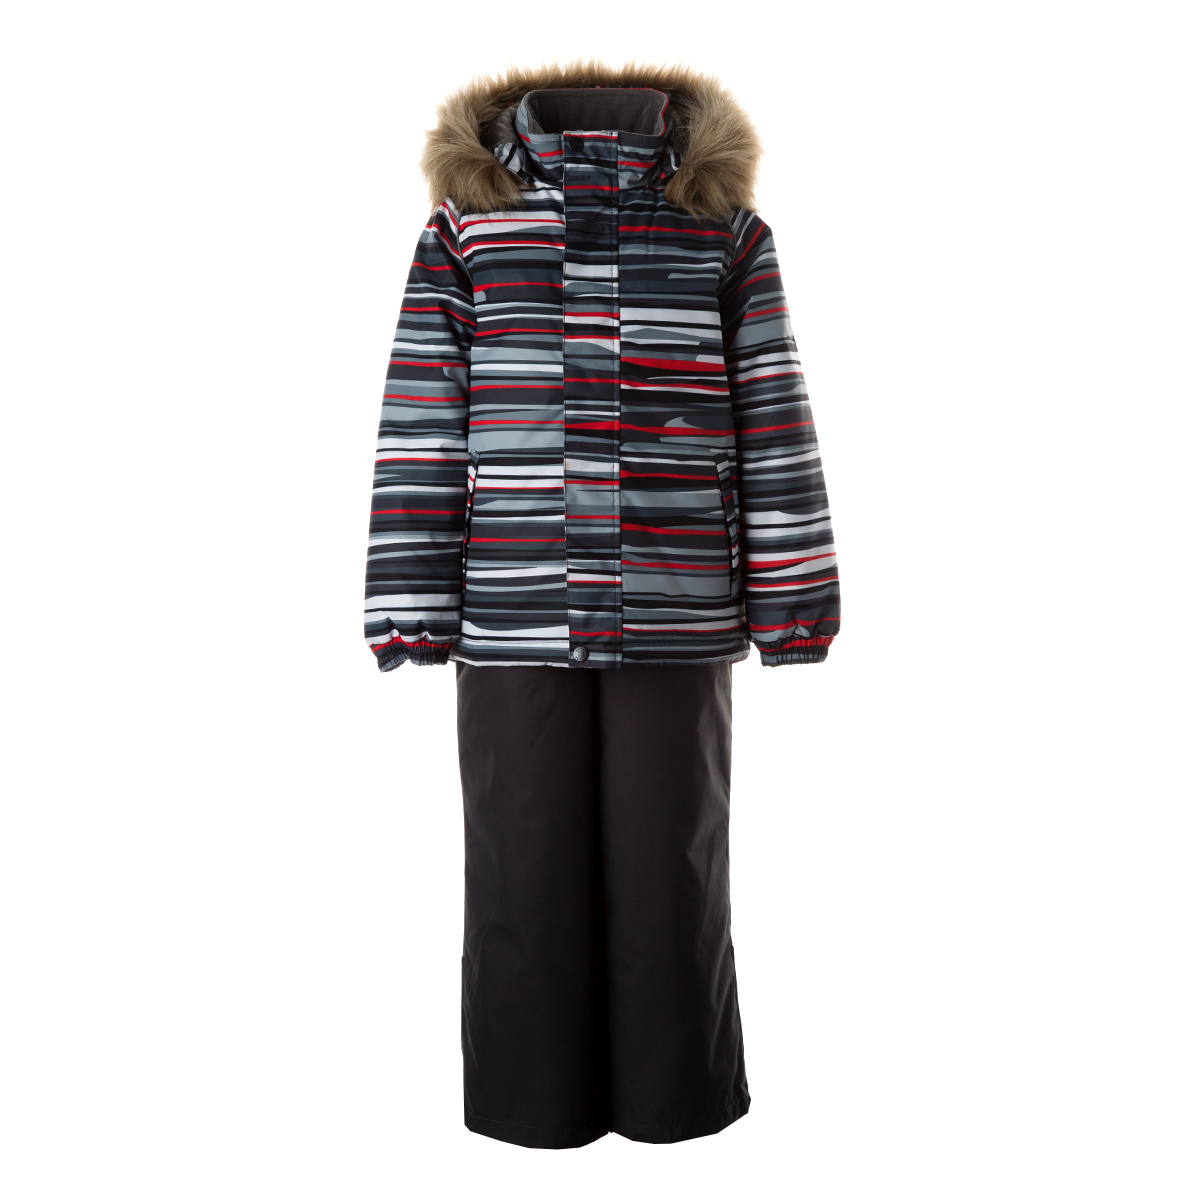 Комплект верхней одежды детский Huppa WINTER цв. темно-серая полоска/темно-серый р. 122